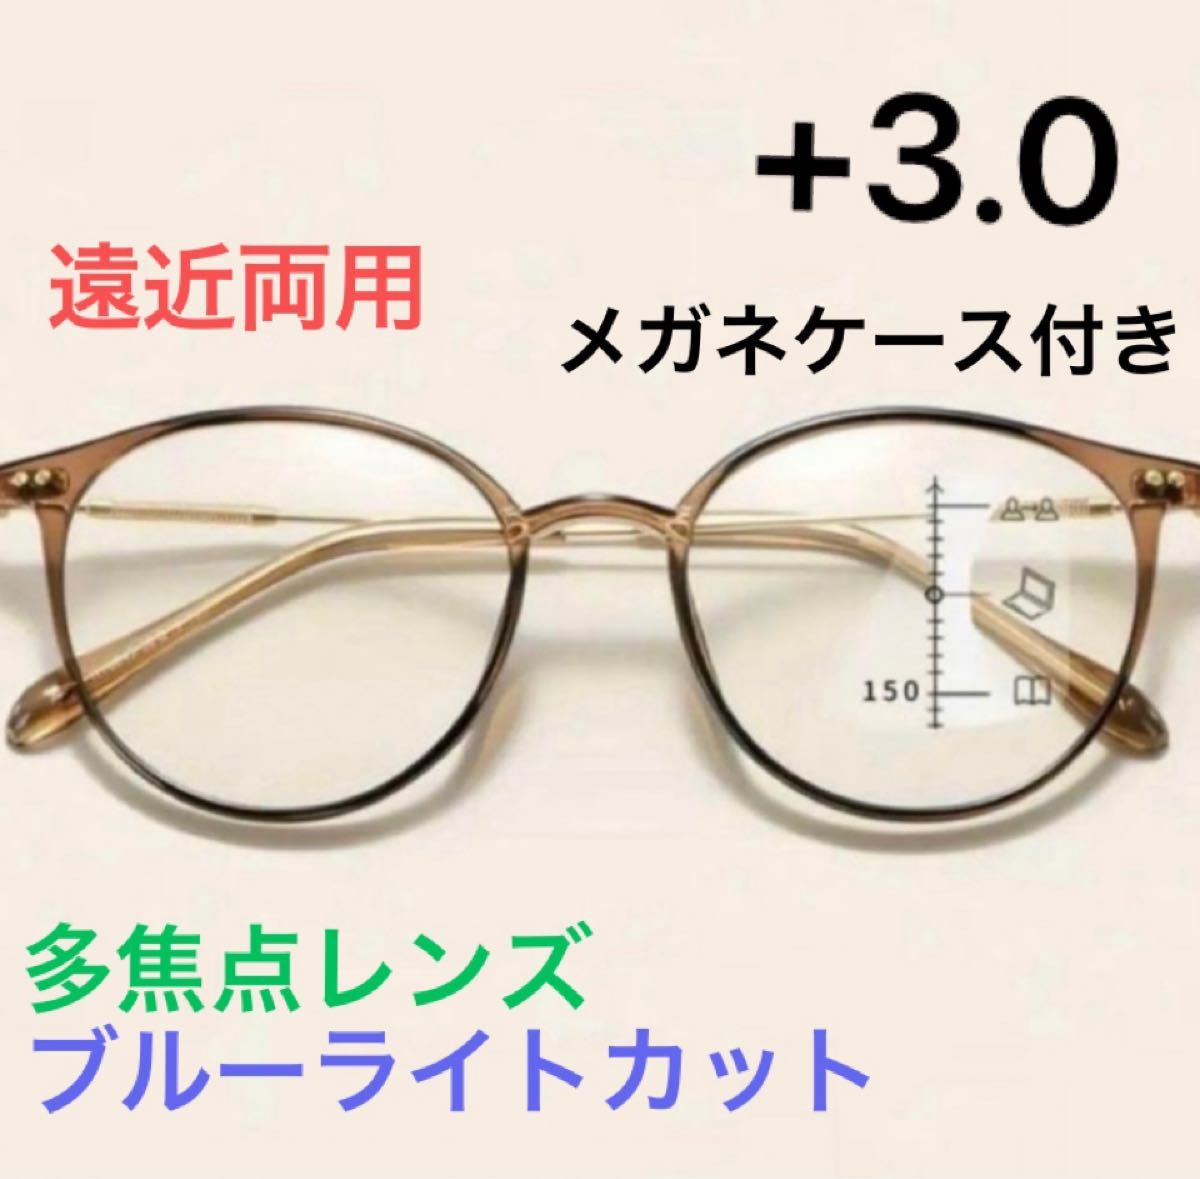 老眼鏡  累進多焦点  遠近両用  ブルーライトカット+3.0 ブラウン  メガネ 老眼鏡 眼鏡 シニアグラス リーディンググラス